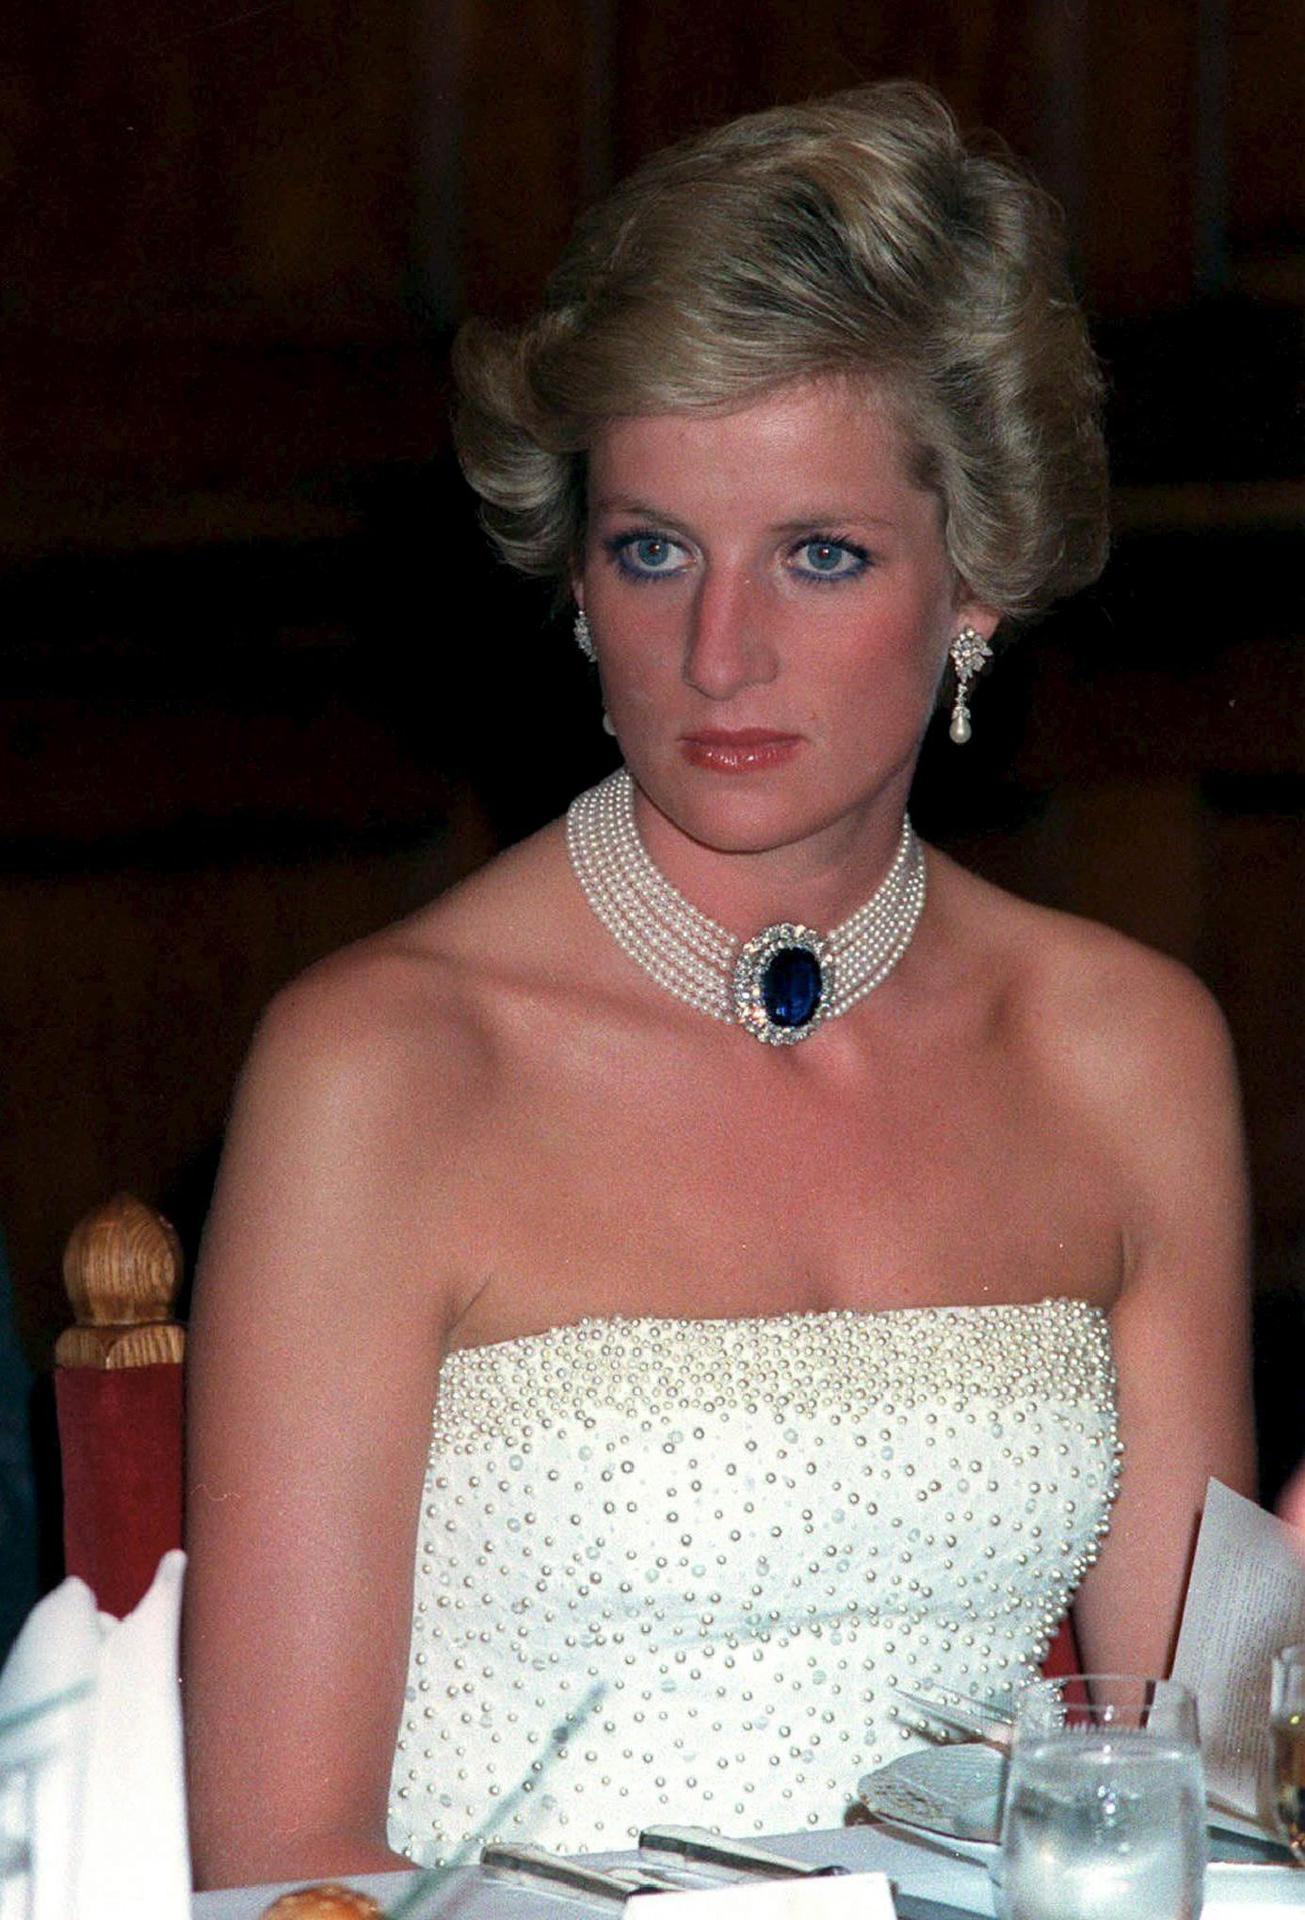 Imagen de archivo del 7 de mayo de 1990 de la princesa británica Diana en una cena de gala. EFE/Lajos Soos
